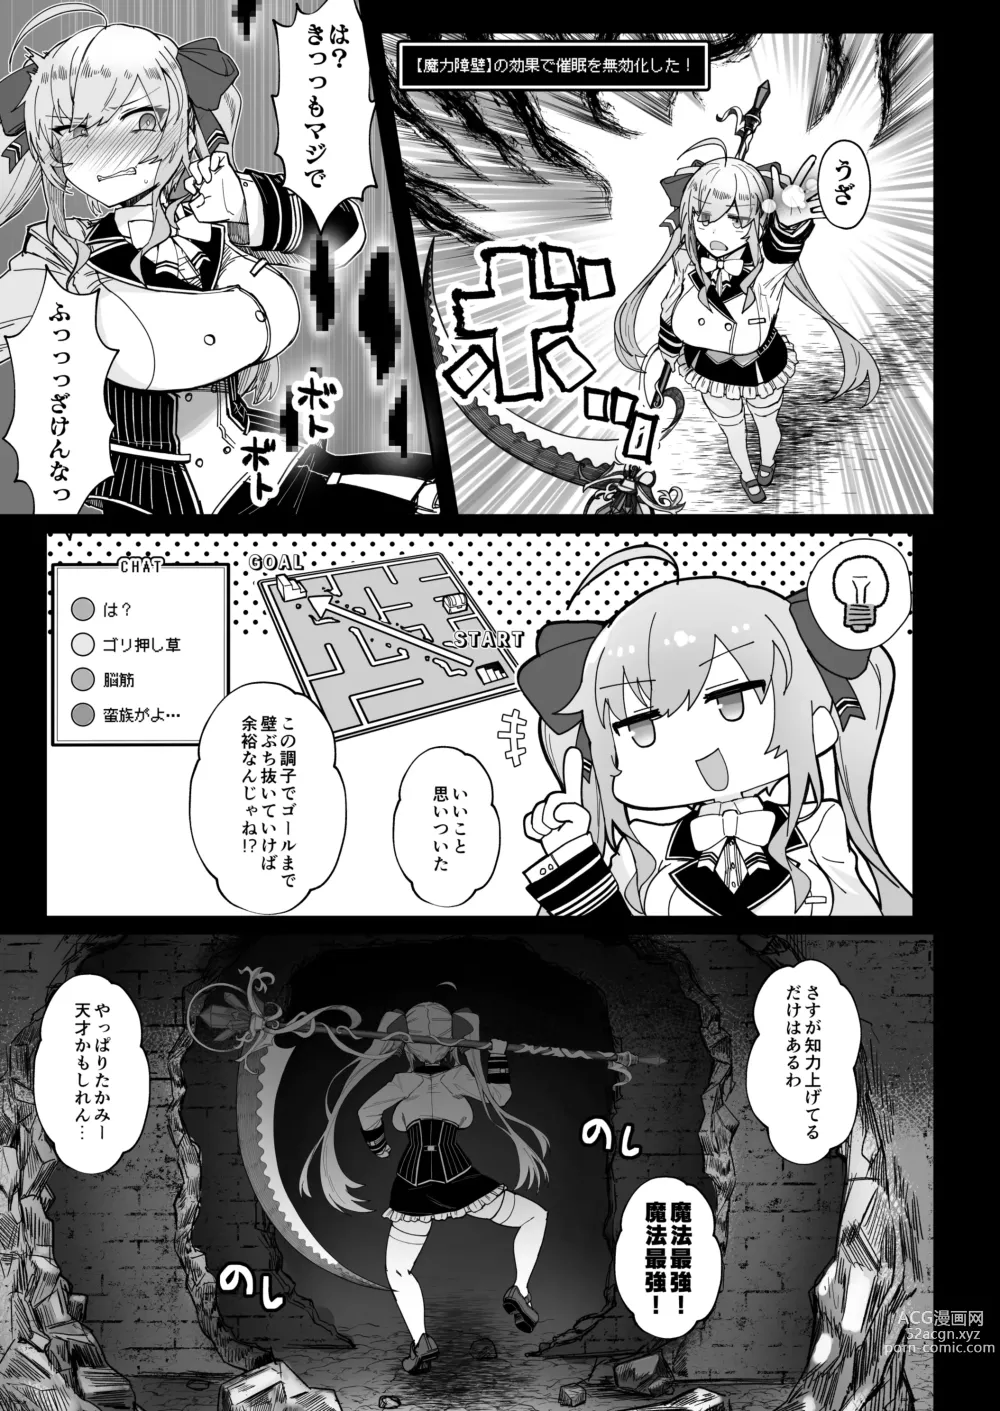 Page 6 of doujinshi Niji Ero Trap Dungeon Bu 2